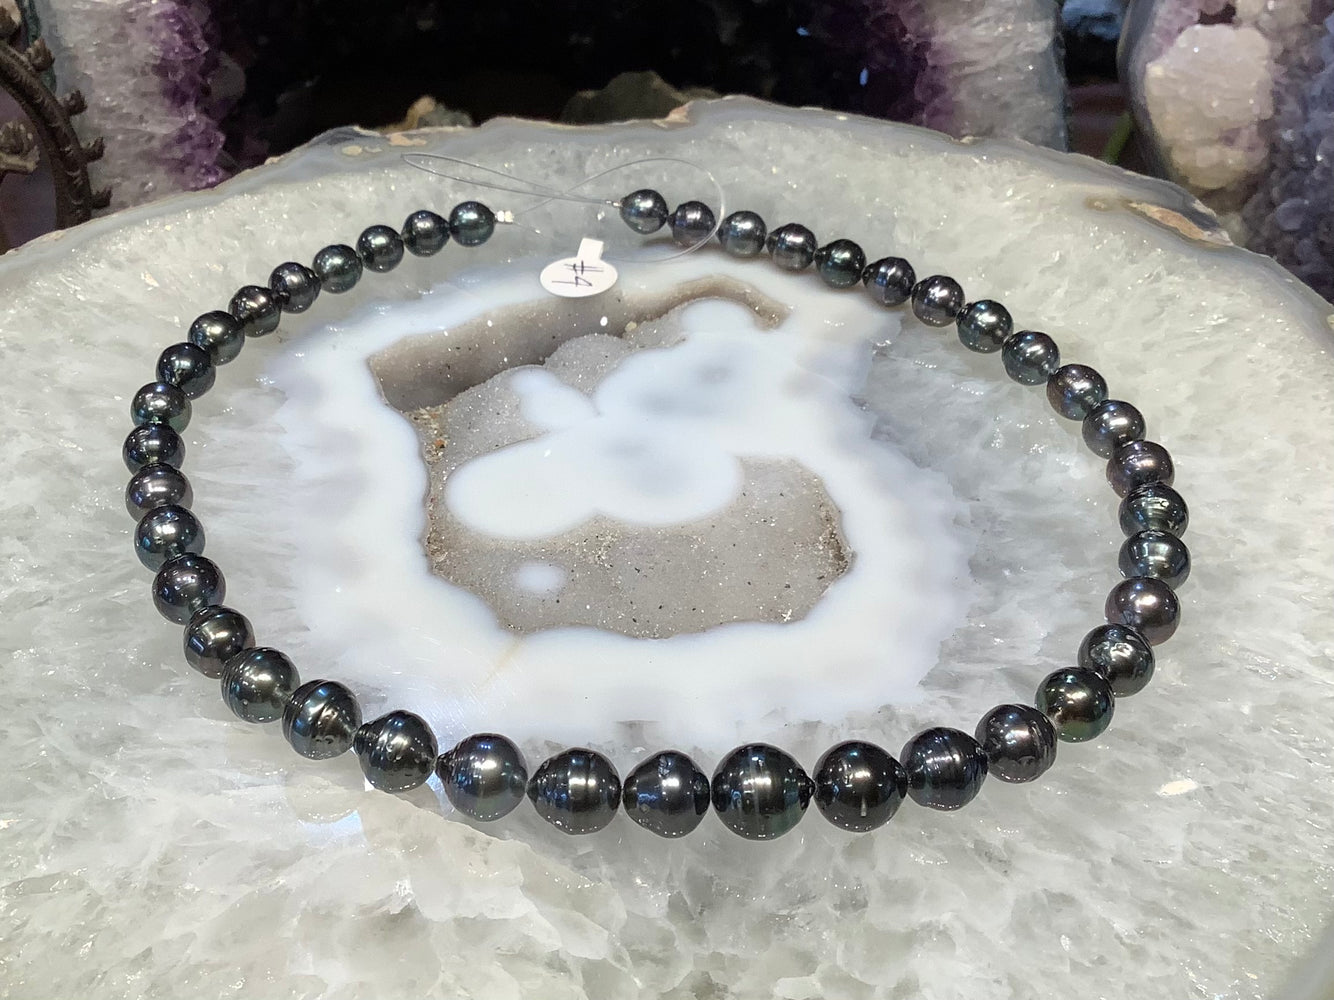 Stunning Natural Tahitian pearls #4 8-11mm